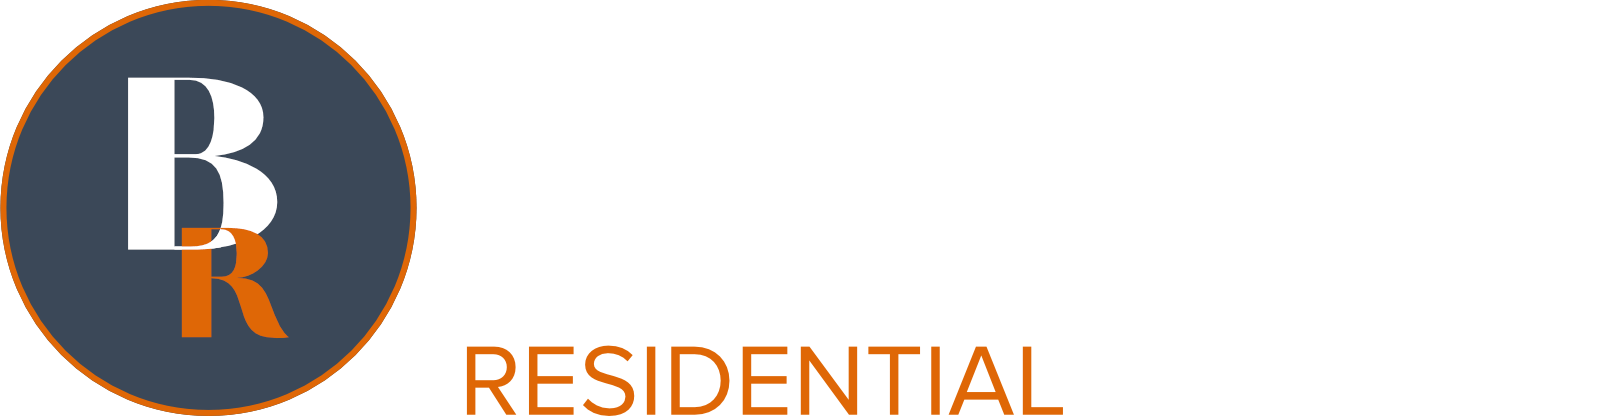 Butler Residential